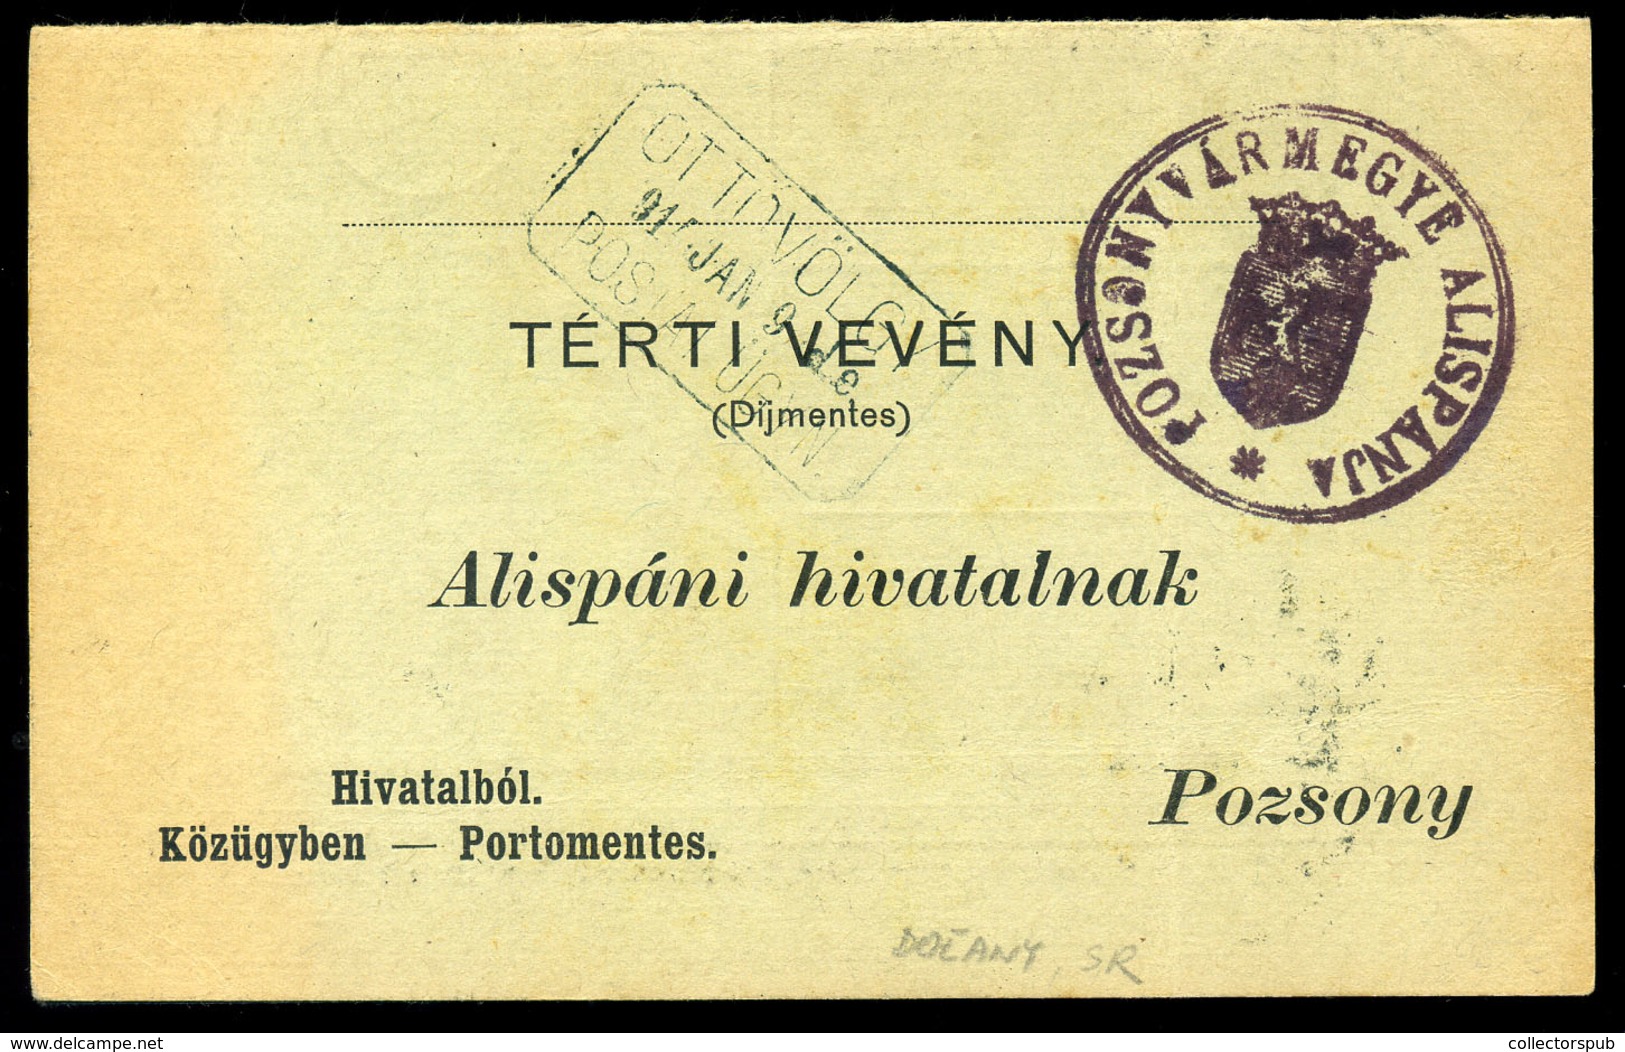 OTTOVÖLGY / Doľany  1914. Portómentes Postázott Tértivevény Postaügynökségi Bélyegzéssel - Usati